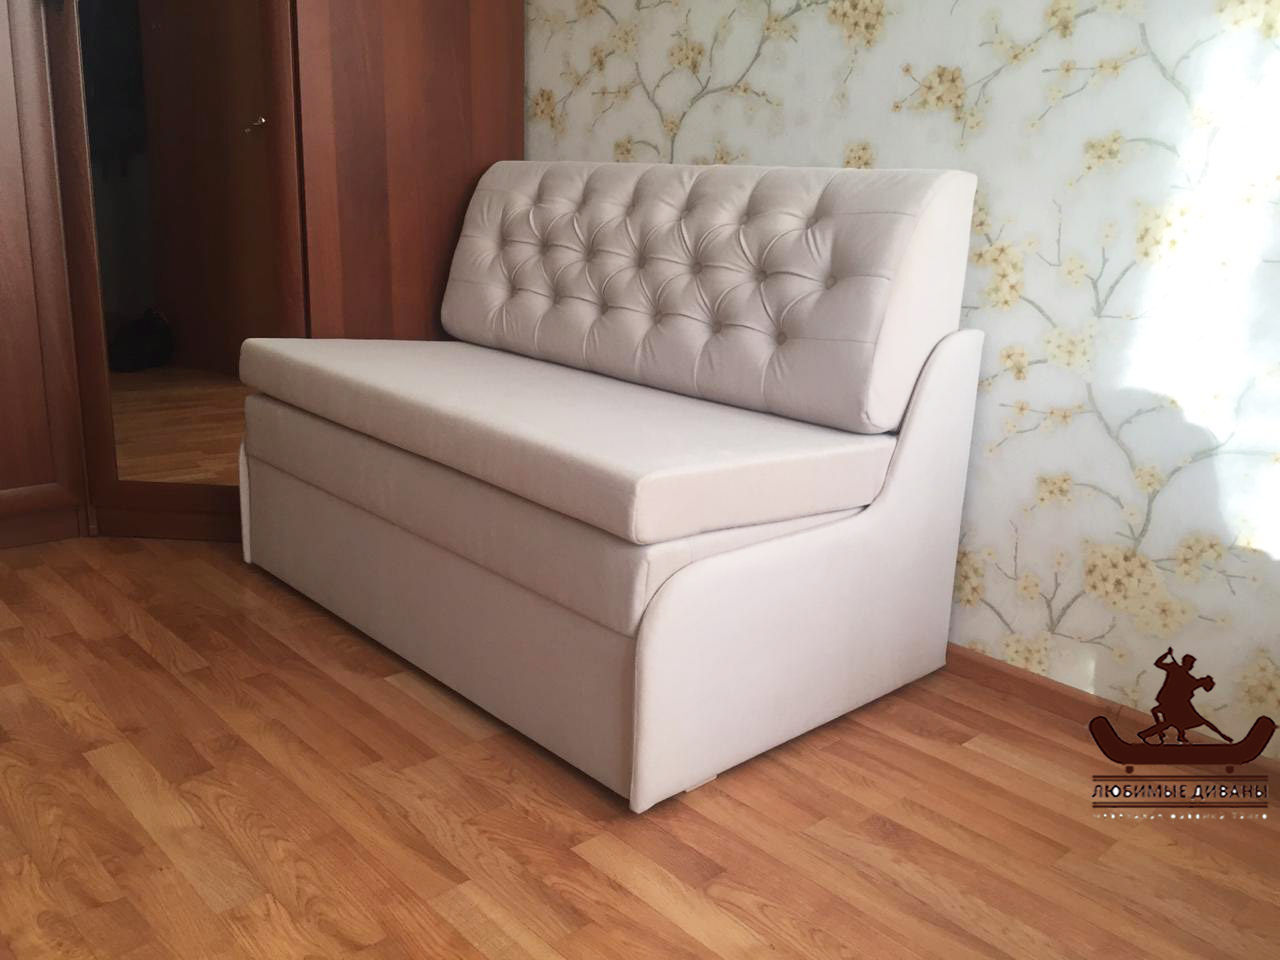 Раскладной диван Танго-4 шириной 120 см и глубиной 75 см в малогабаритной квартире